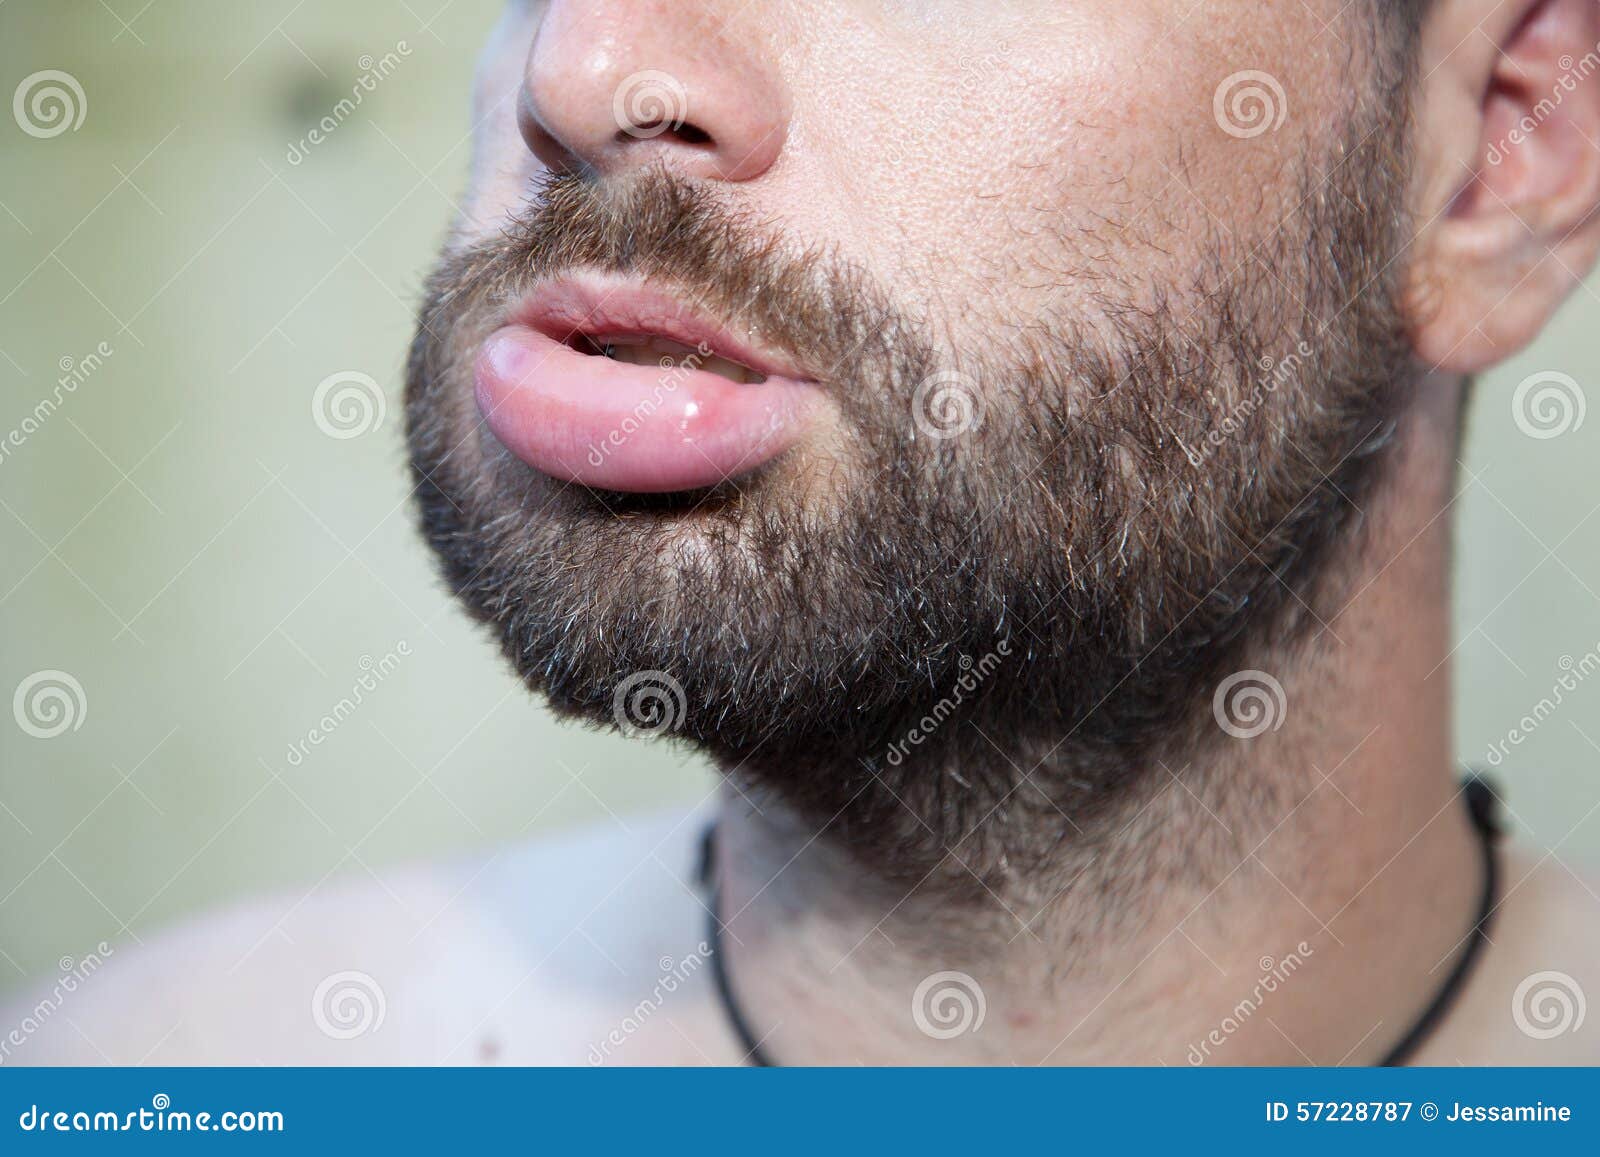 swollen lip